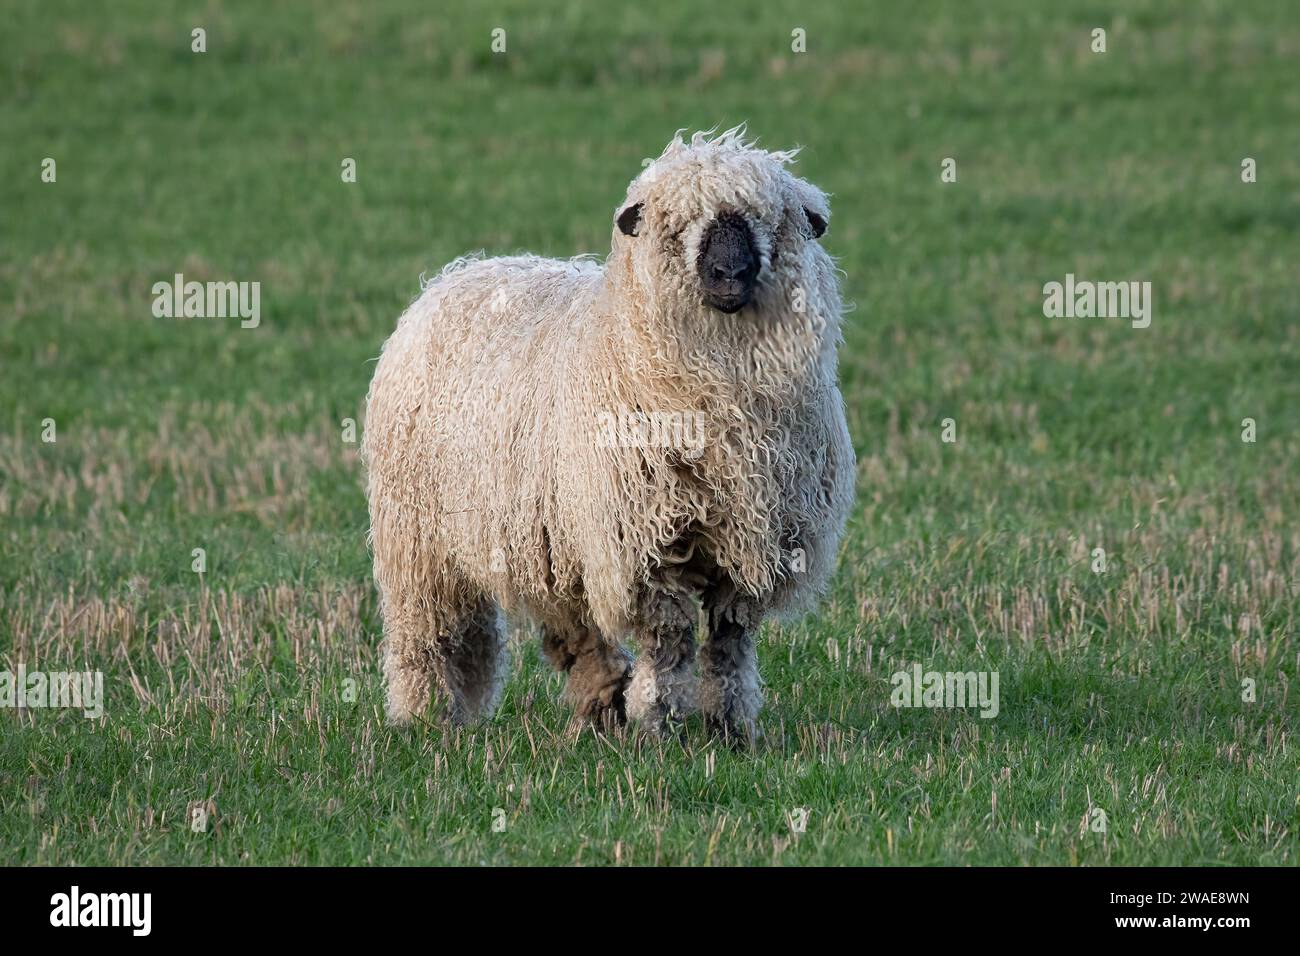 Ein Nahbild eines zotteligen Schafes. Der Widder hat ein schweres Wollvlies und steht auf einem Feld, das der Kamera zugewandt ist Stockfoto